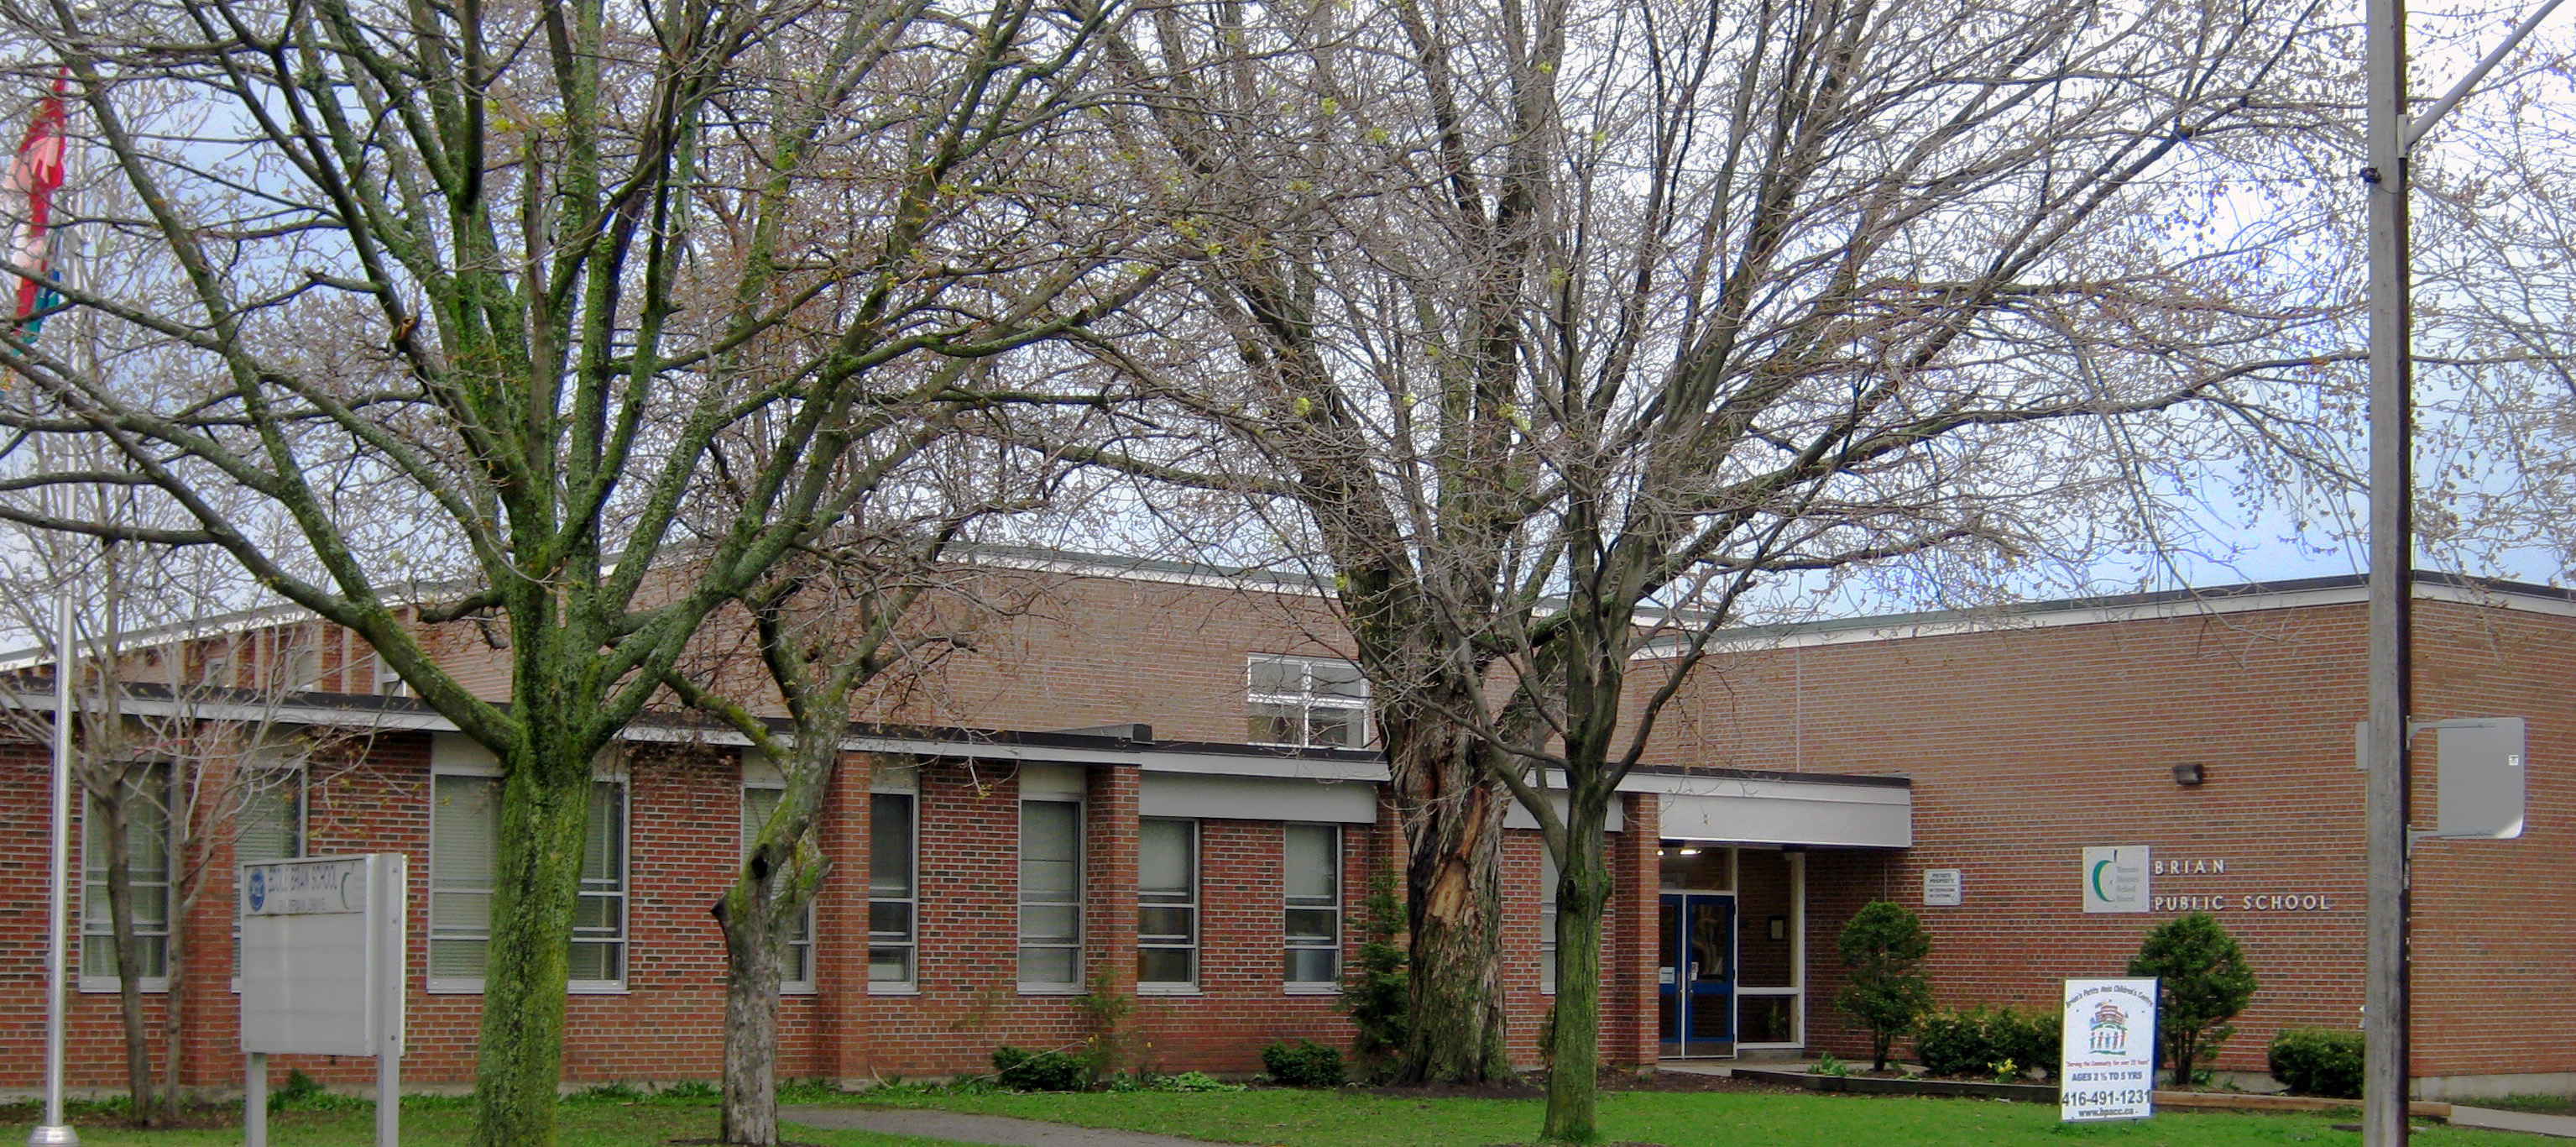 Brian School campus image